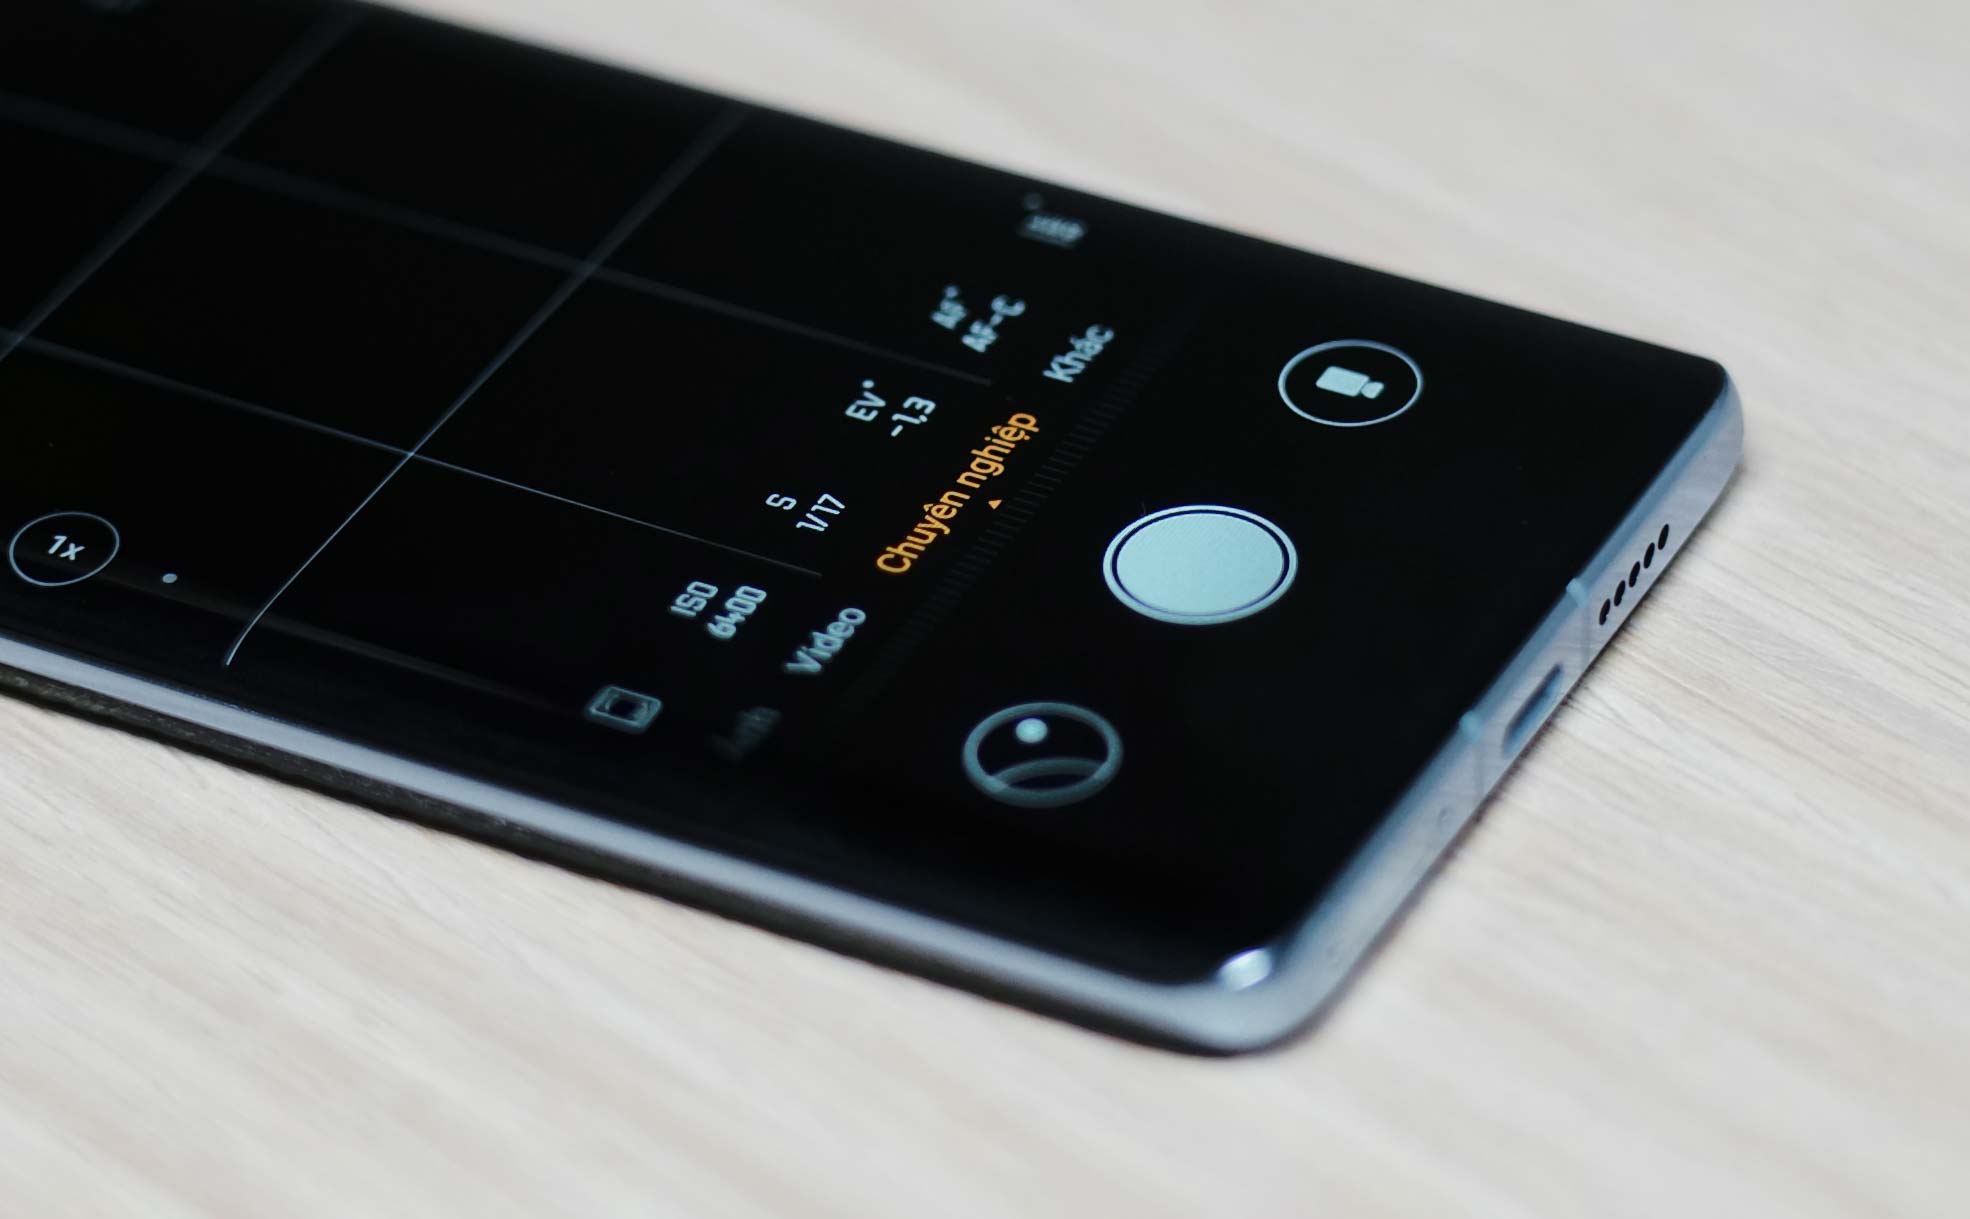 Anh em Android có sử dụng chế độ chụp ảnh chuyên nghiệp trên điện thoại không?